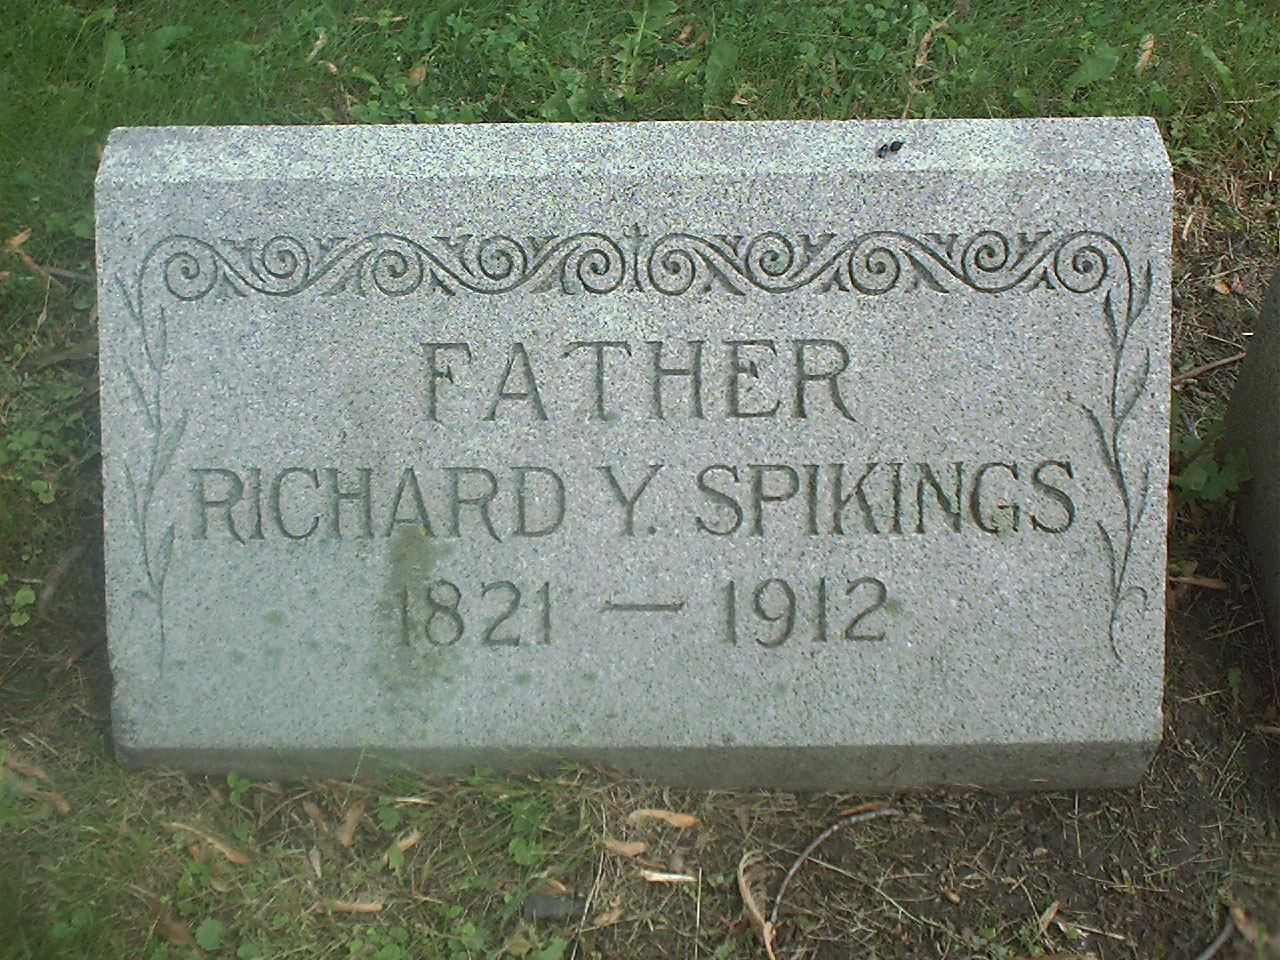 Richard Y. Spikings headstone